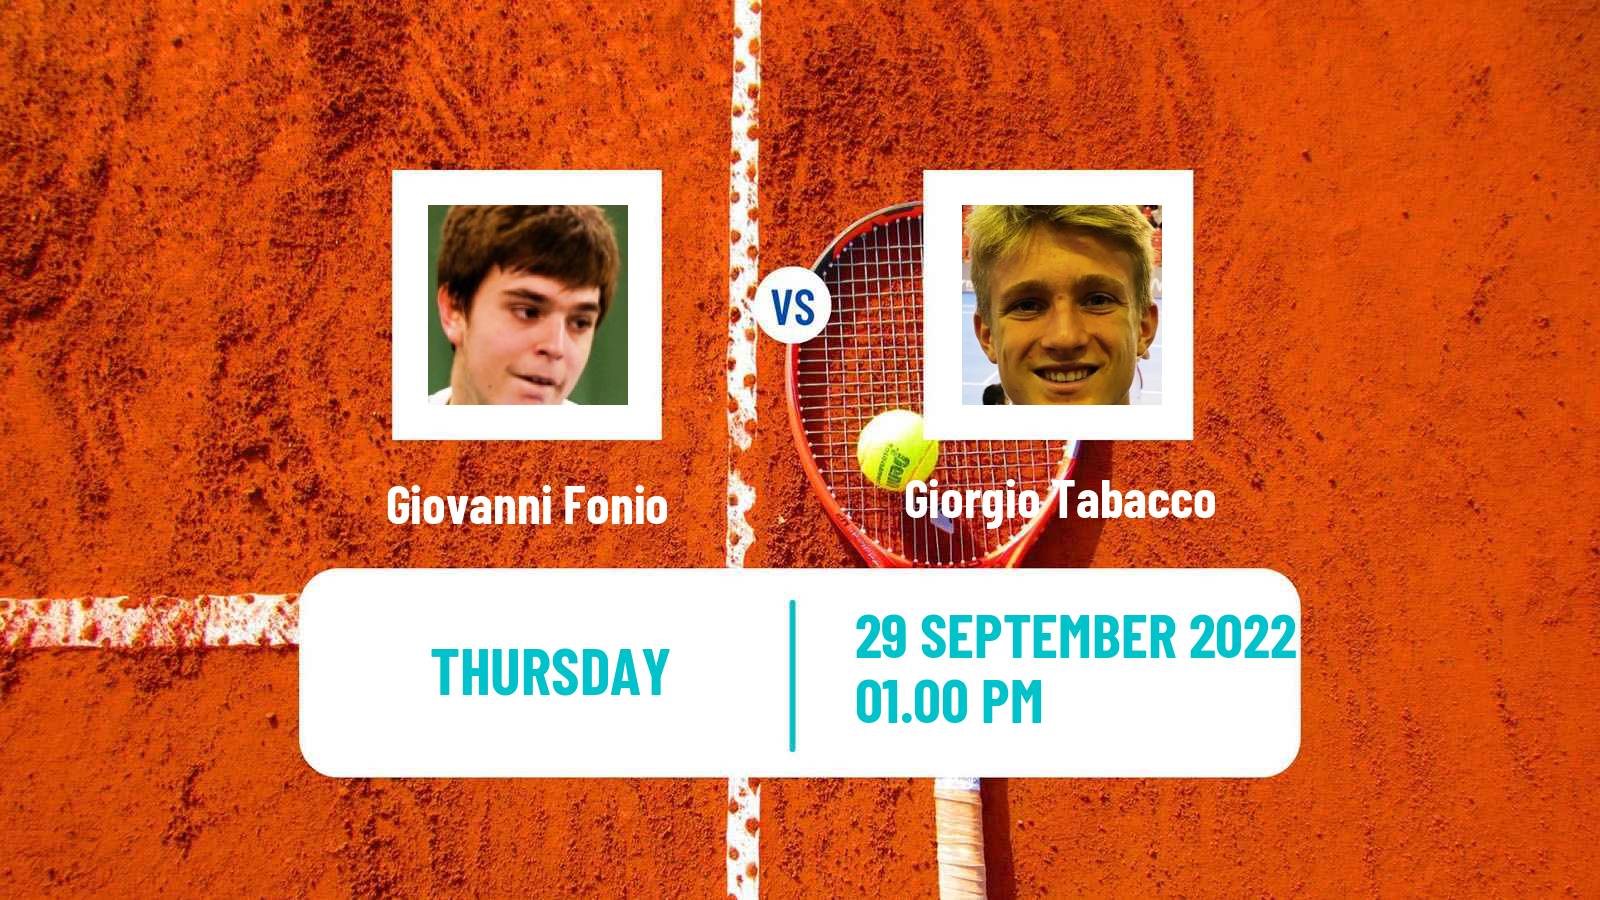 Tennis ITF Tournaments Giovanni Fonio - Giorgio Tabacco